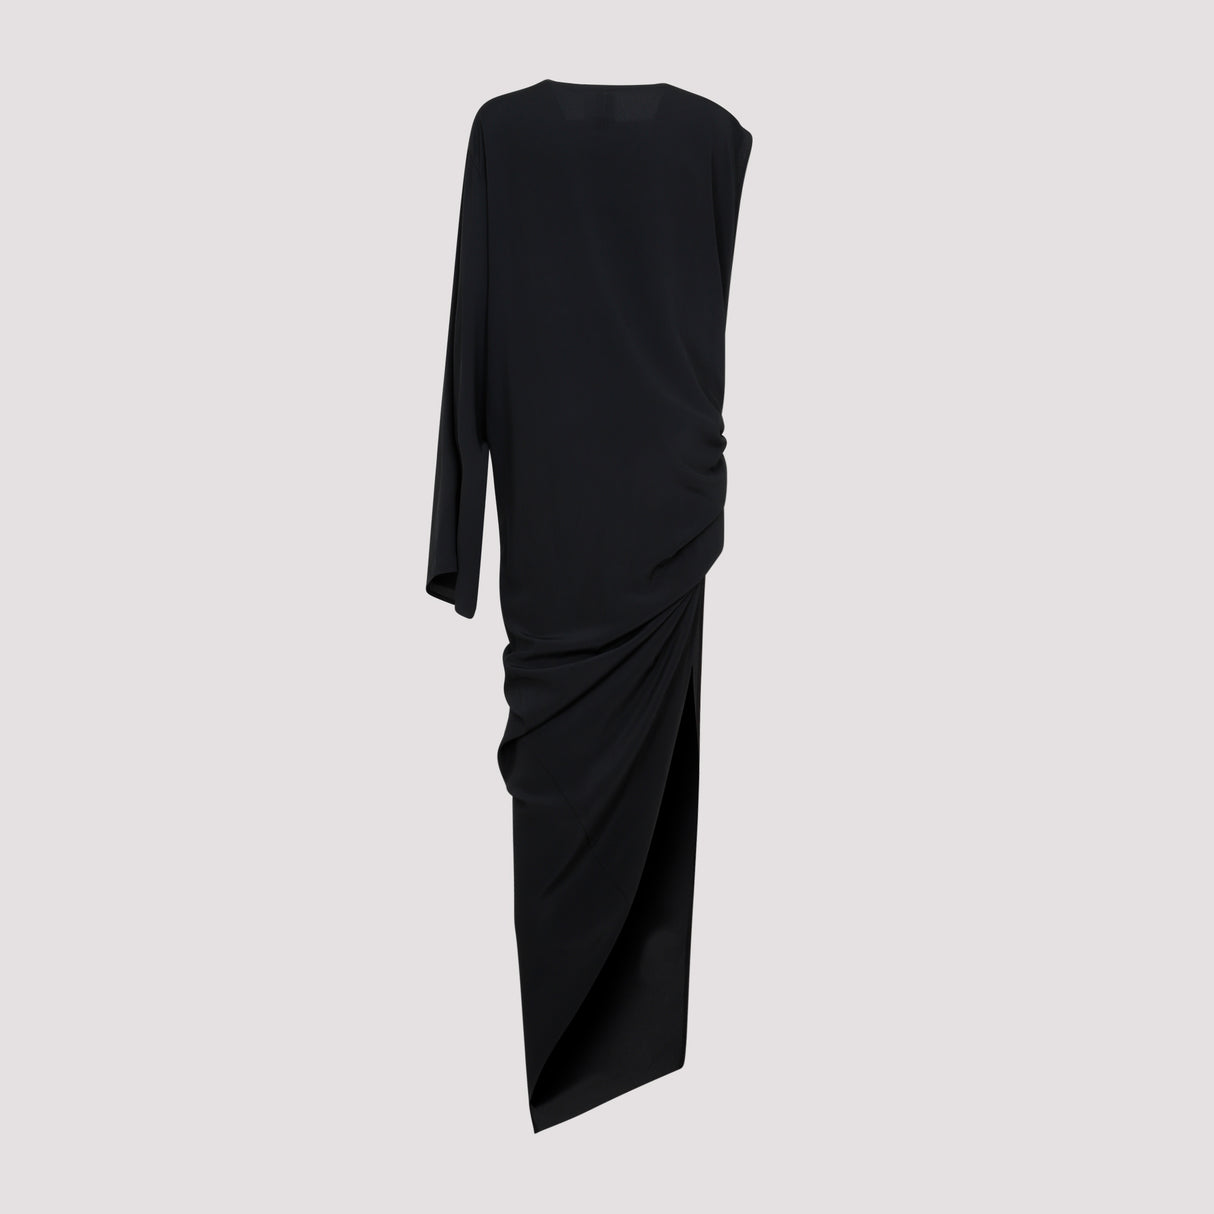 シンプルな黒ドレス for 女性 with 豪華な生地ブレンド